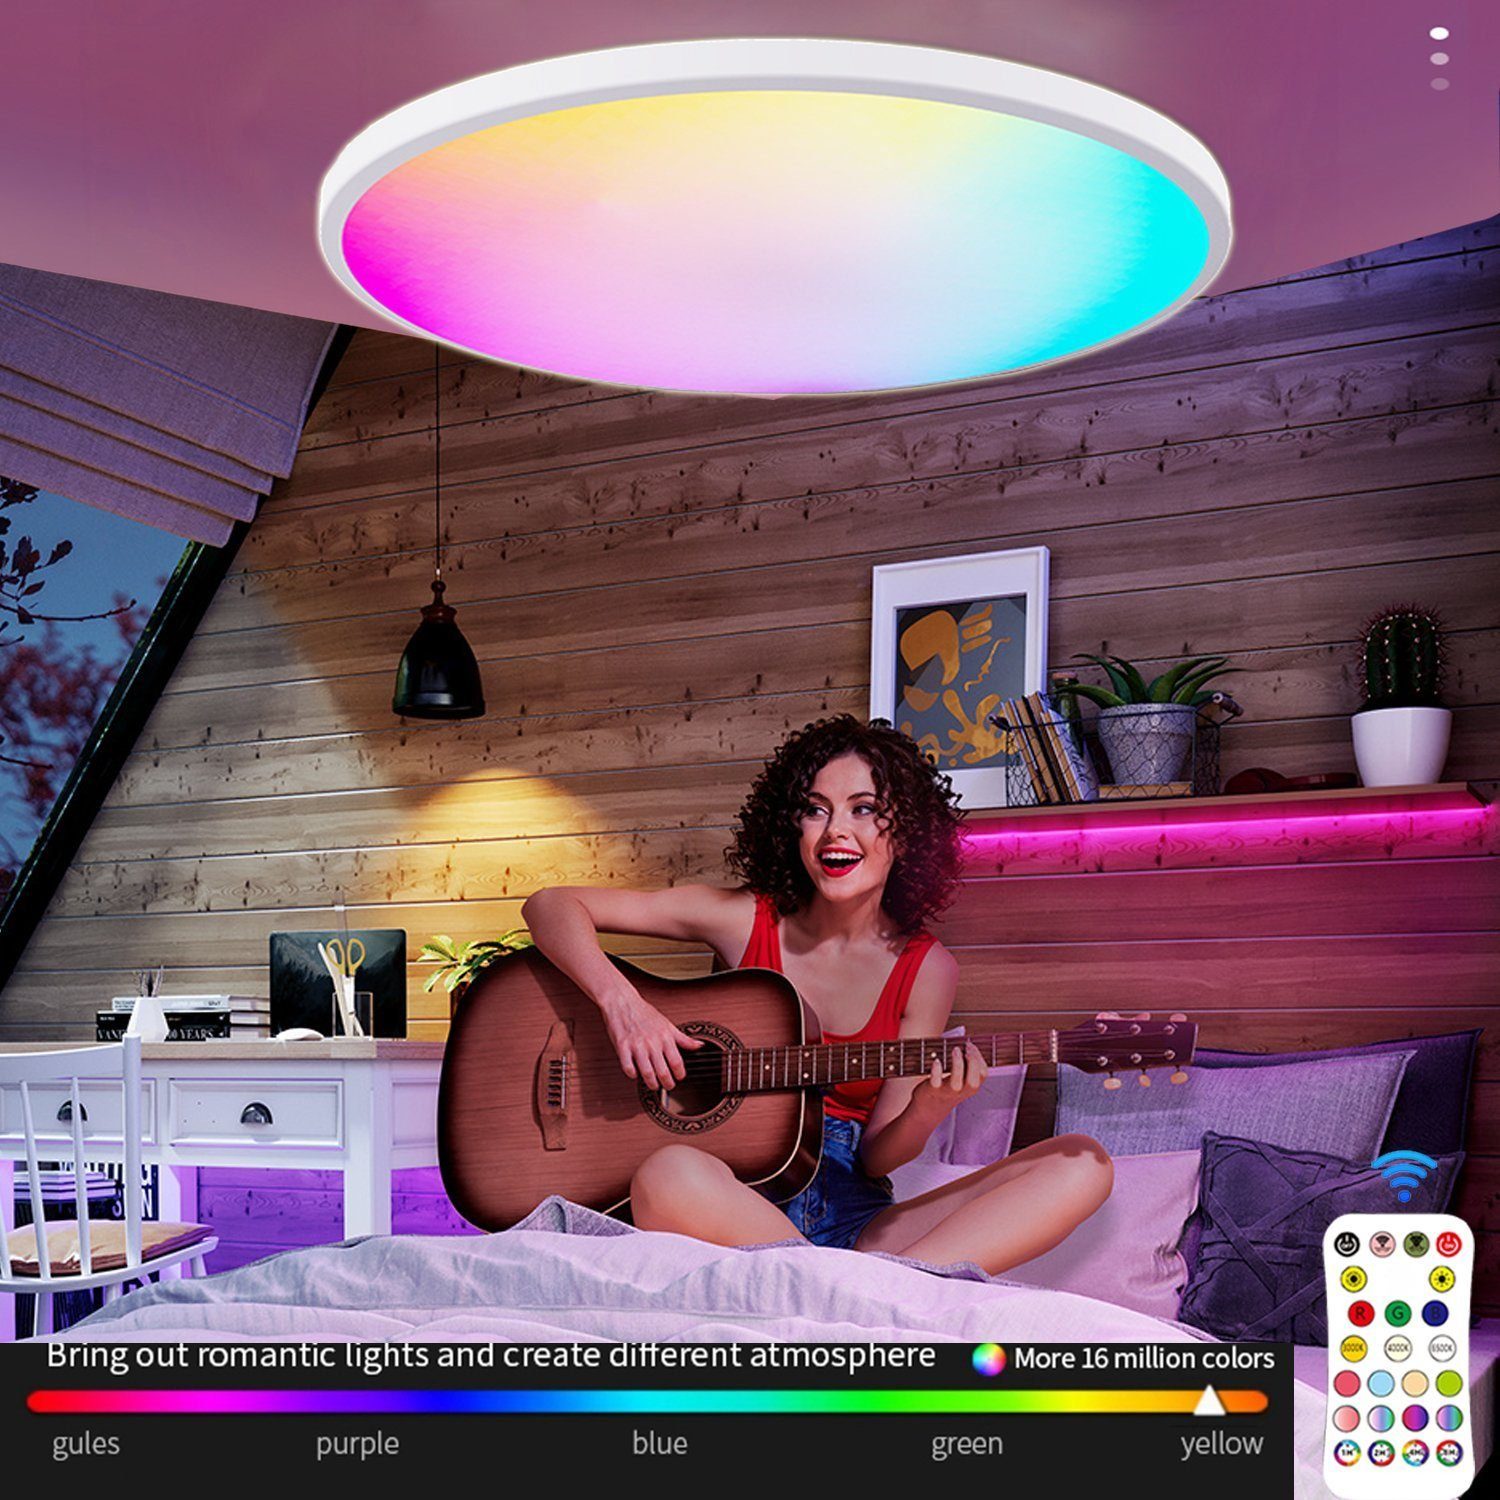 Mutoy Deckenleuchte Dimmbar LED Deckenlampe Ø30cm RGB Farbwechsel mit Fernbedienung, 24W RGB+Warmweiß+Neutralweiß+kaltweiß 2000LM, mit deutscher Bedienungsanleitung, für verschiedene Orte und Urlaubsatmosphäre